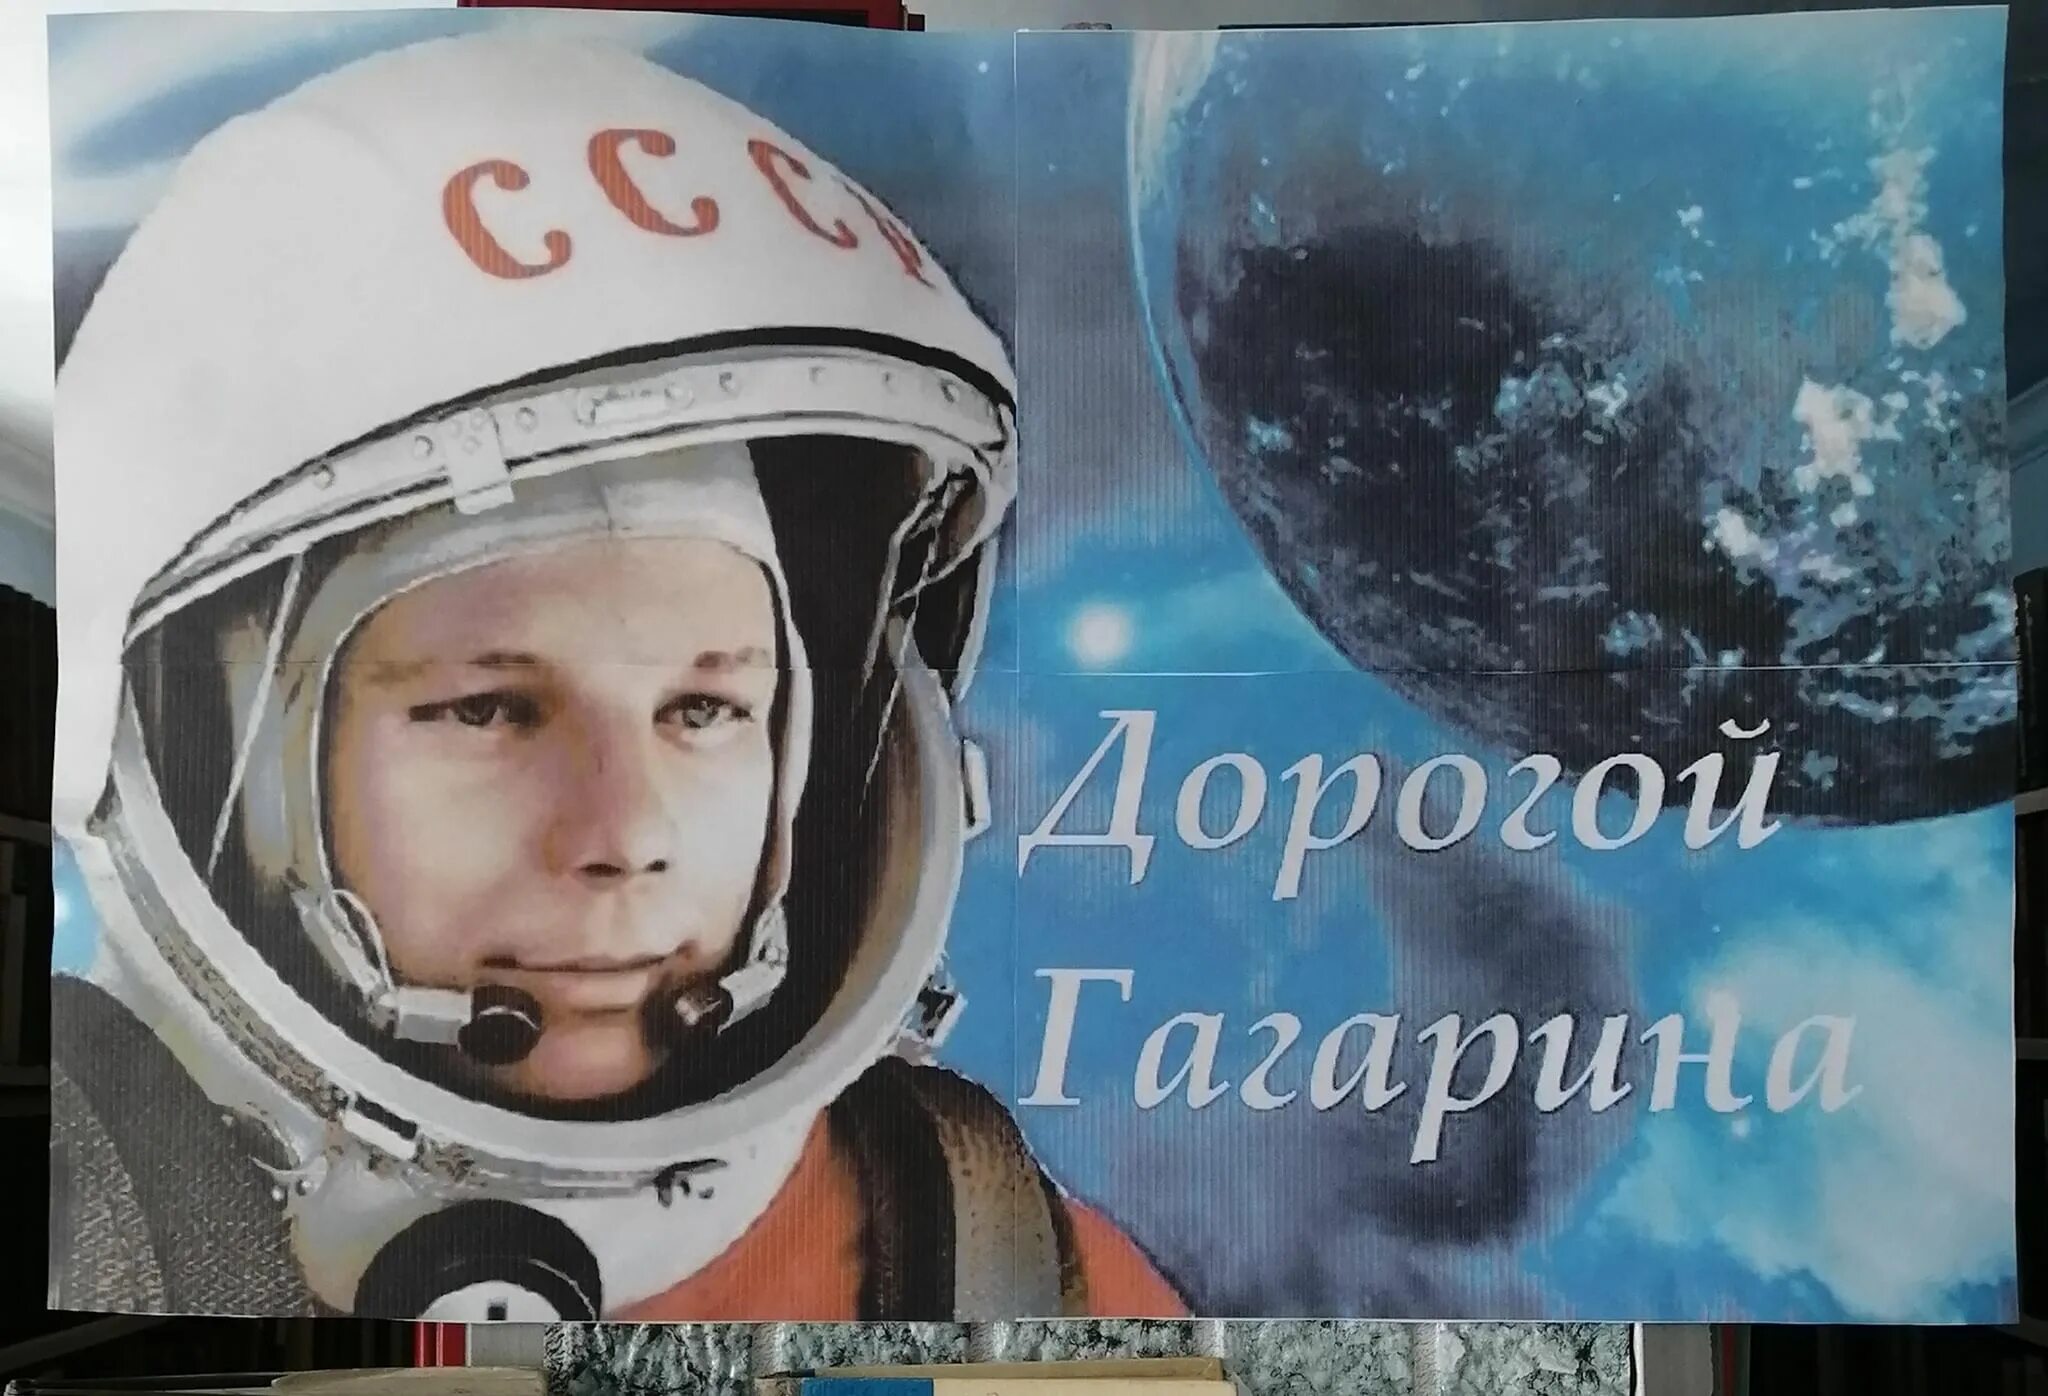 Фото юрия гагарина в скафандре. Портрет Юрия Гагарина для детей в скафандре.